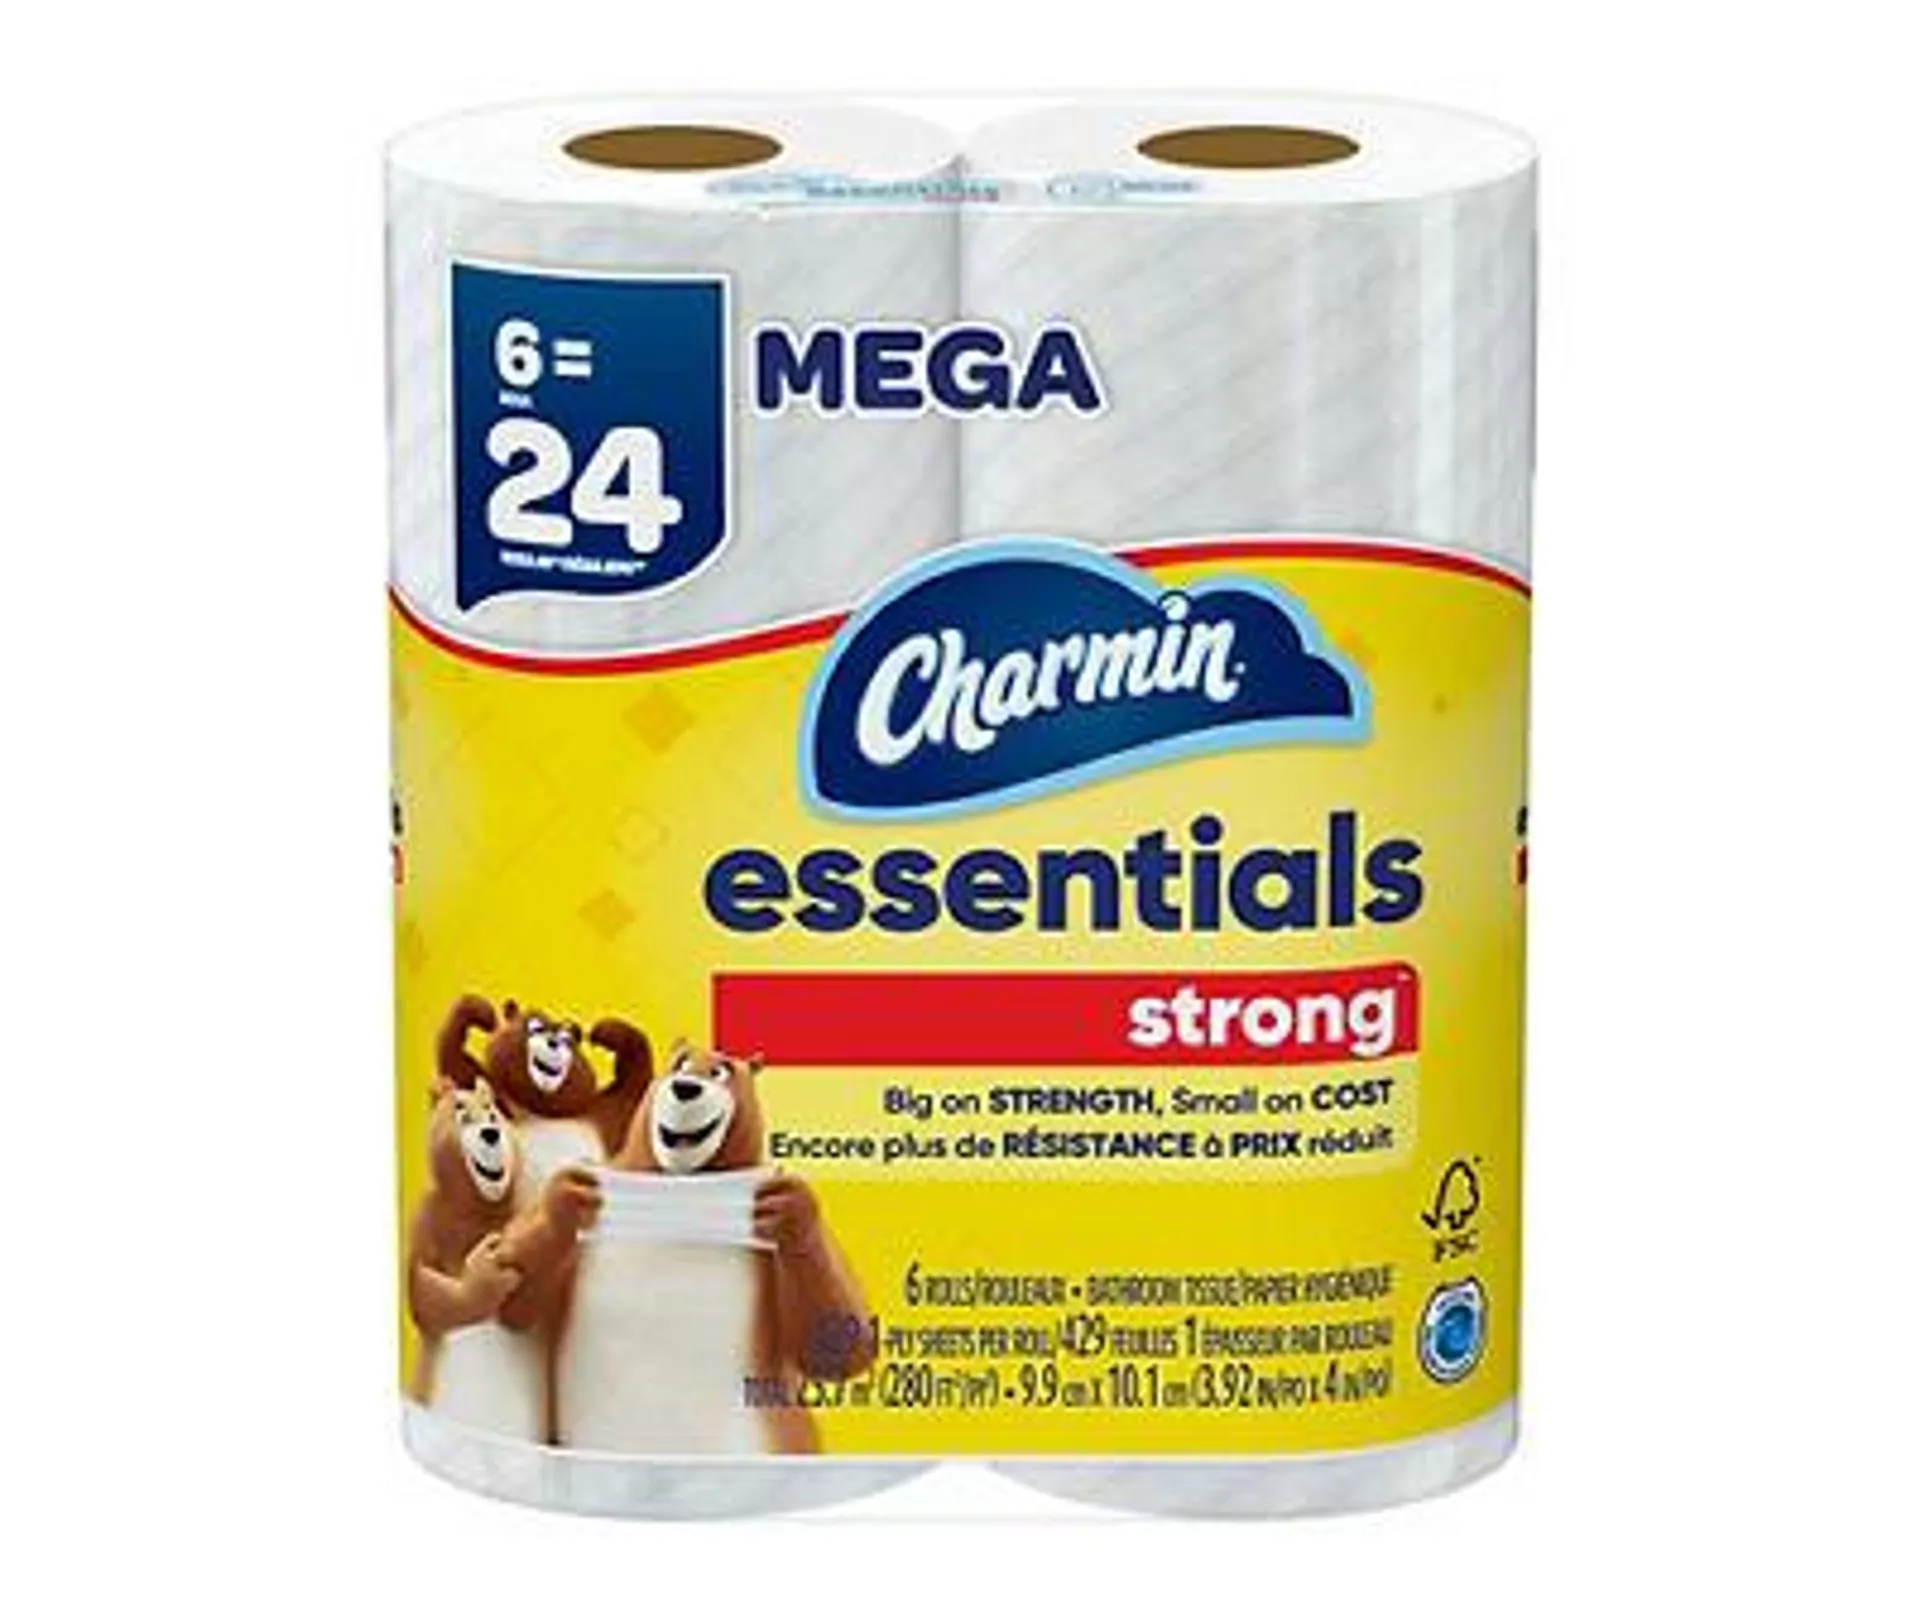 Charmin Essentials Strong Toilet Paper 6 Mega Rolls, 429 Sheets Per Roll